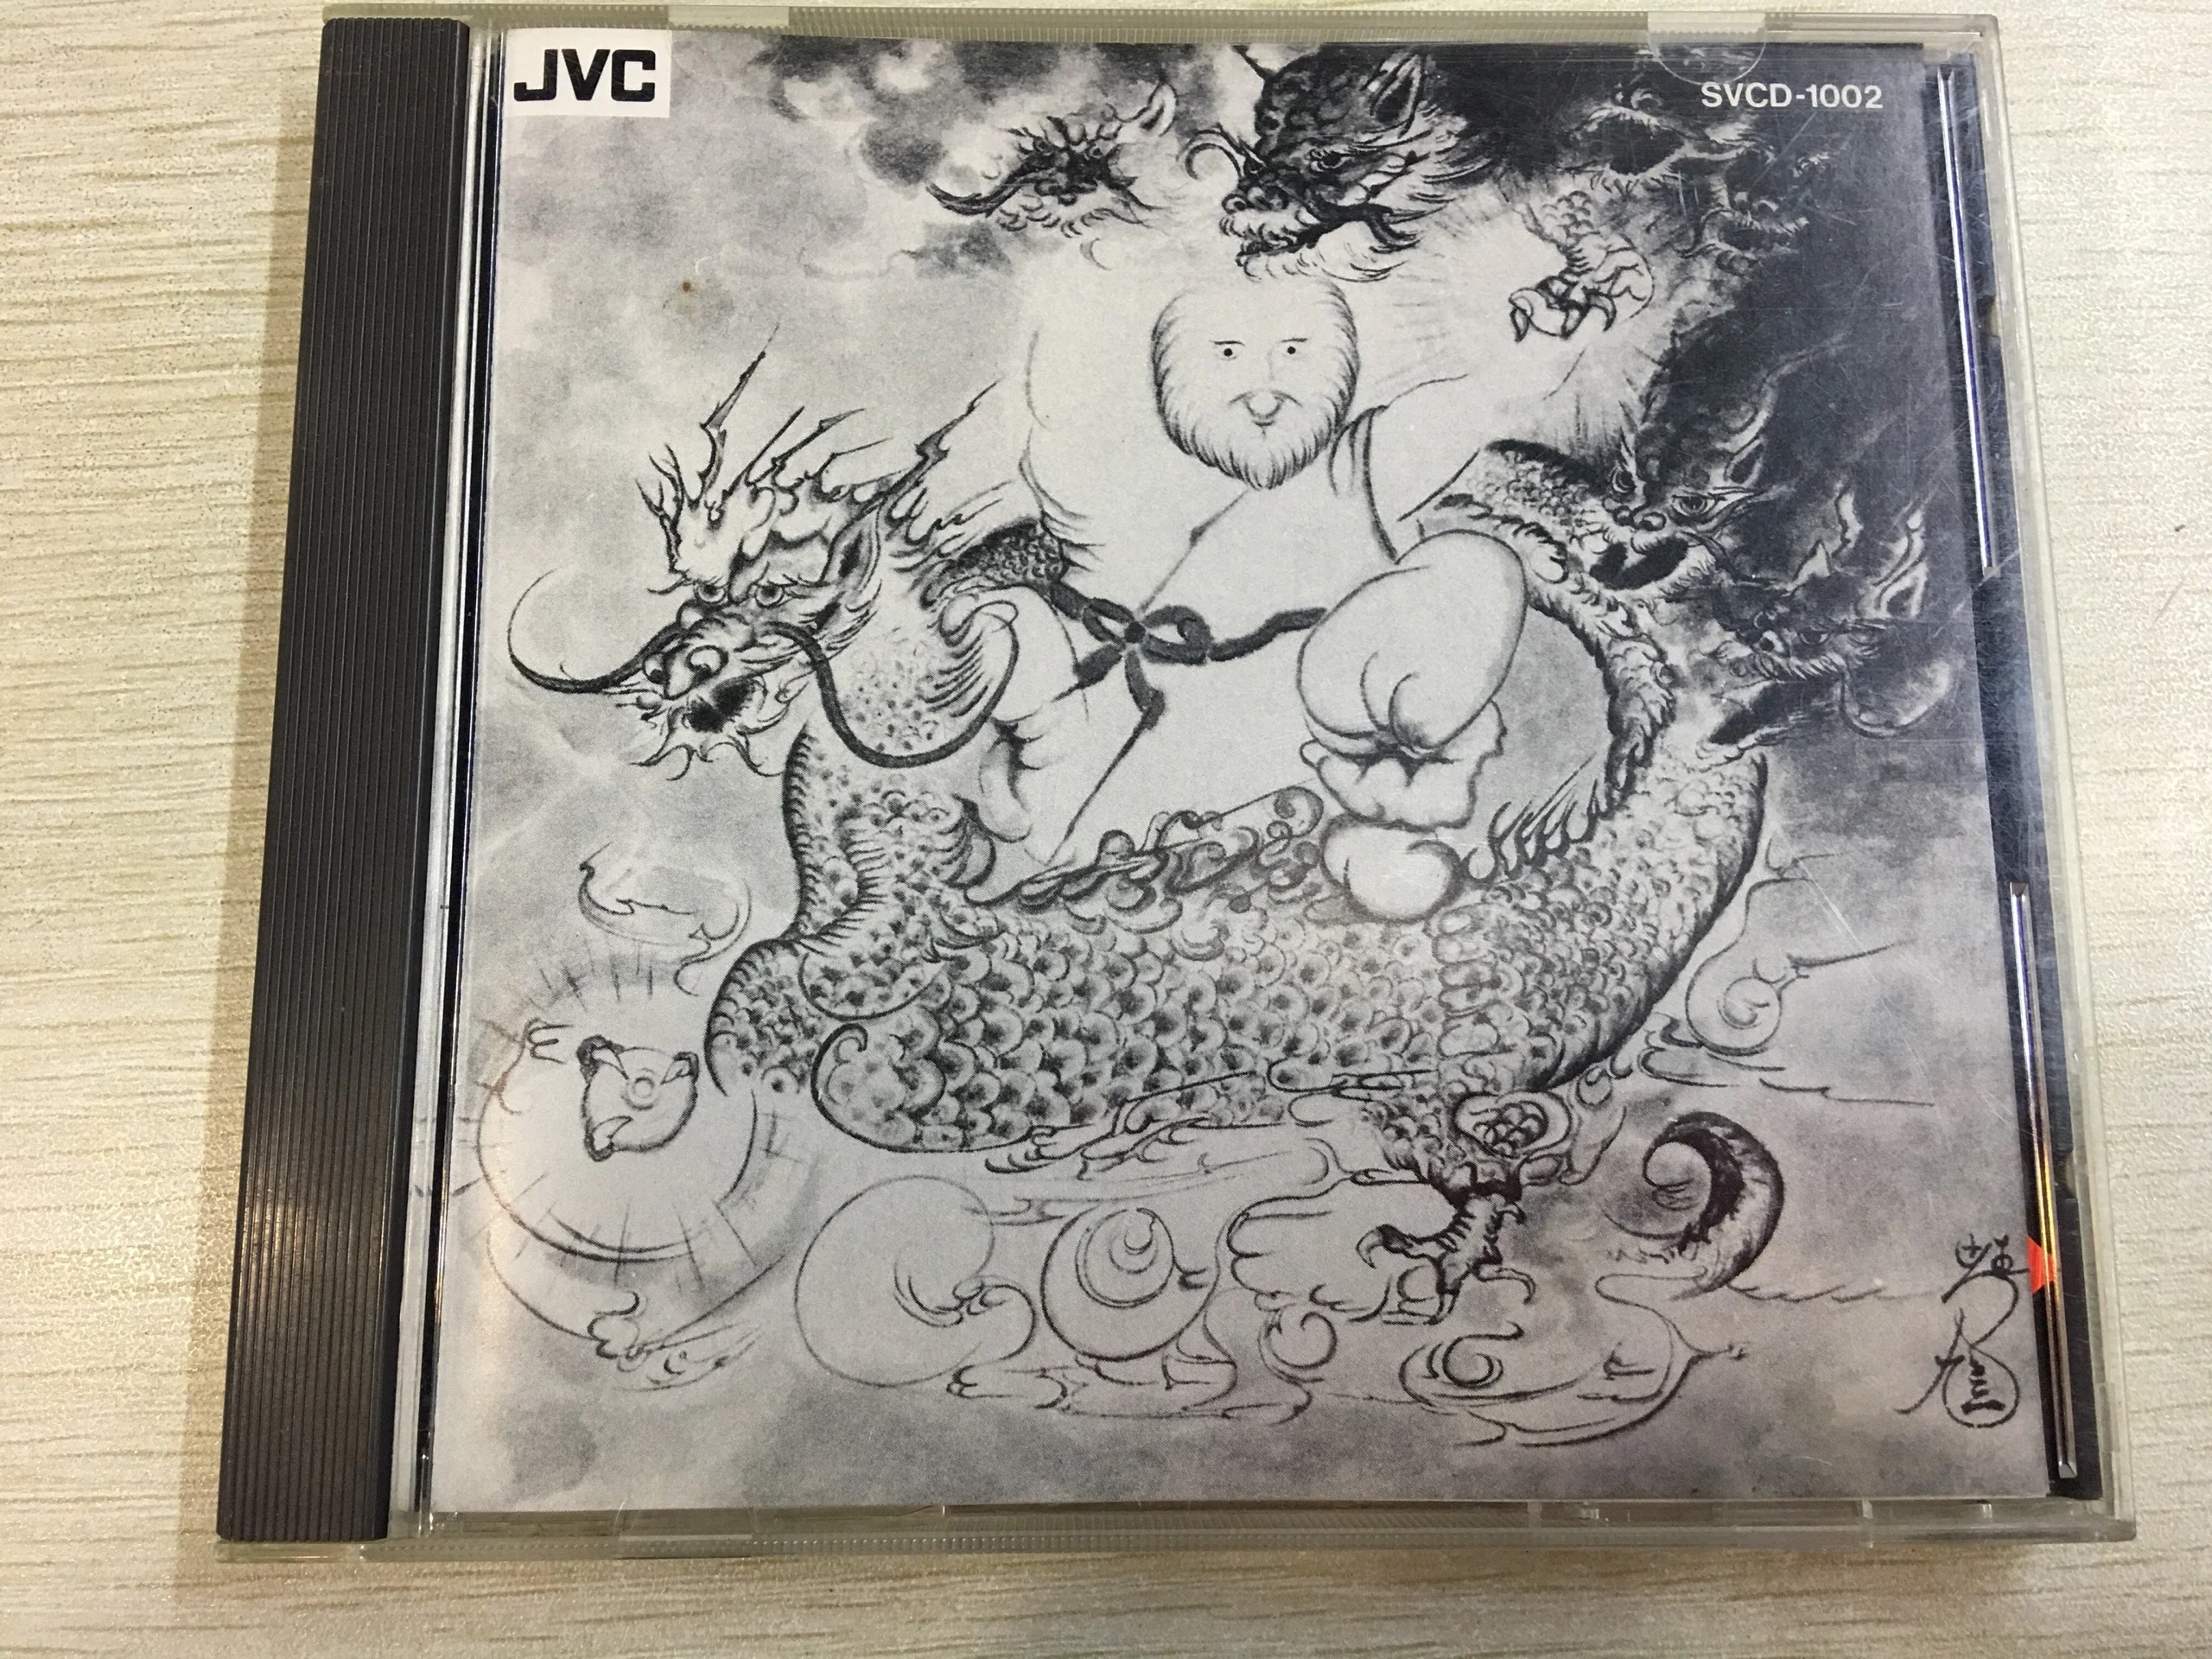 濑户龙介五六七上榜发烧碟人声SVCD-1002 JVC刻字首版无码